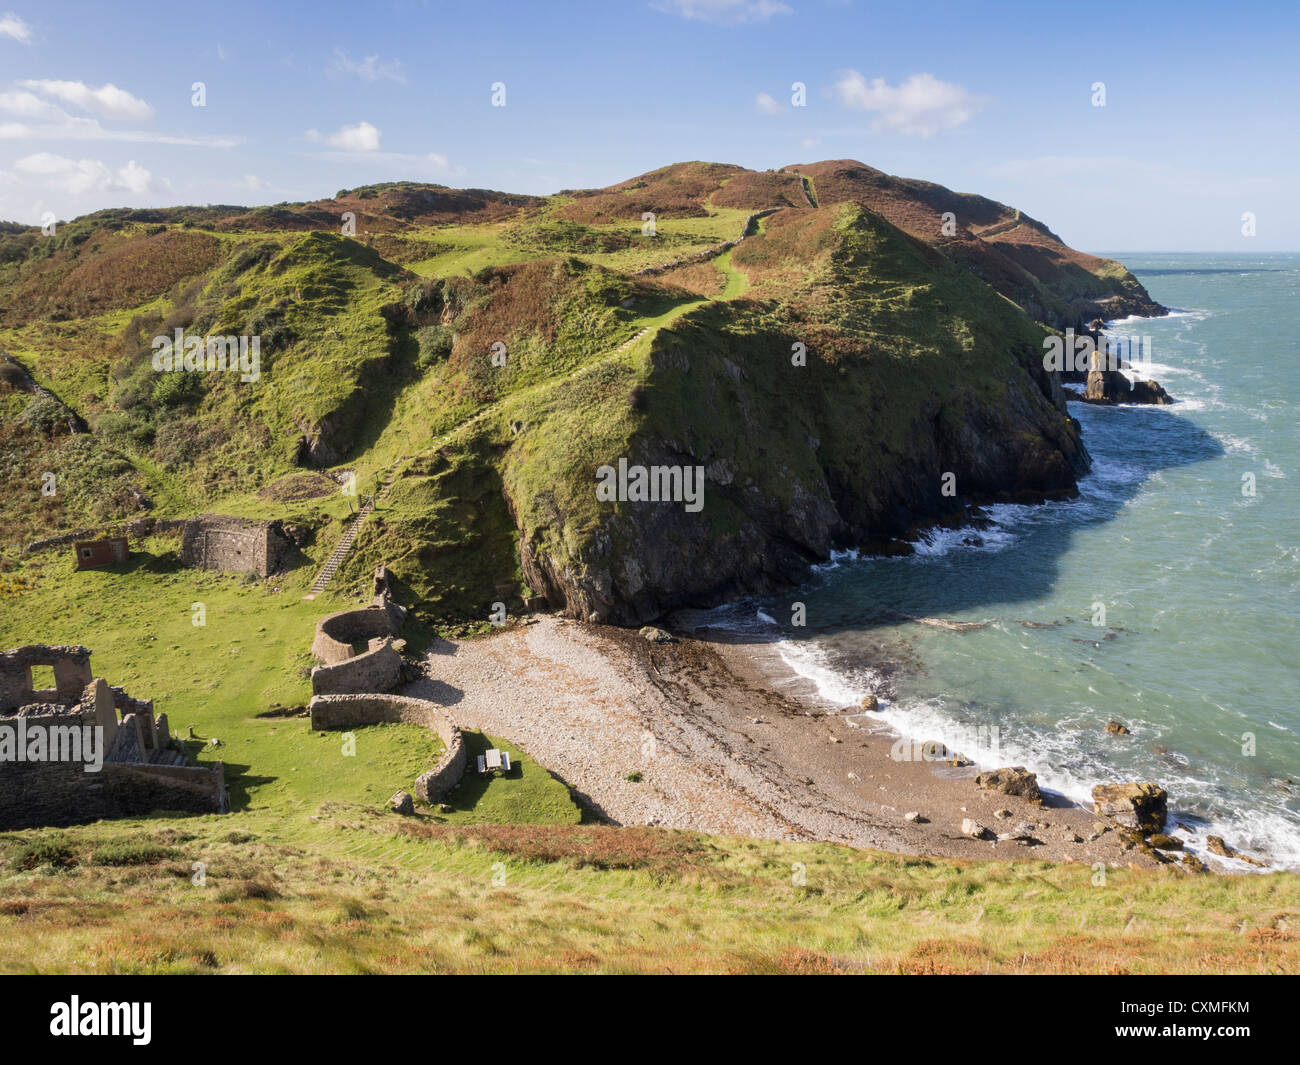 Vista dell'isola di Anglesey percorso costiero Wales sentiero costiero E costa frastagliata in AONB a Porth Llanlleiana Bay Cemaes Anglesey Wales Gran Bretagna Foto Stock